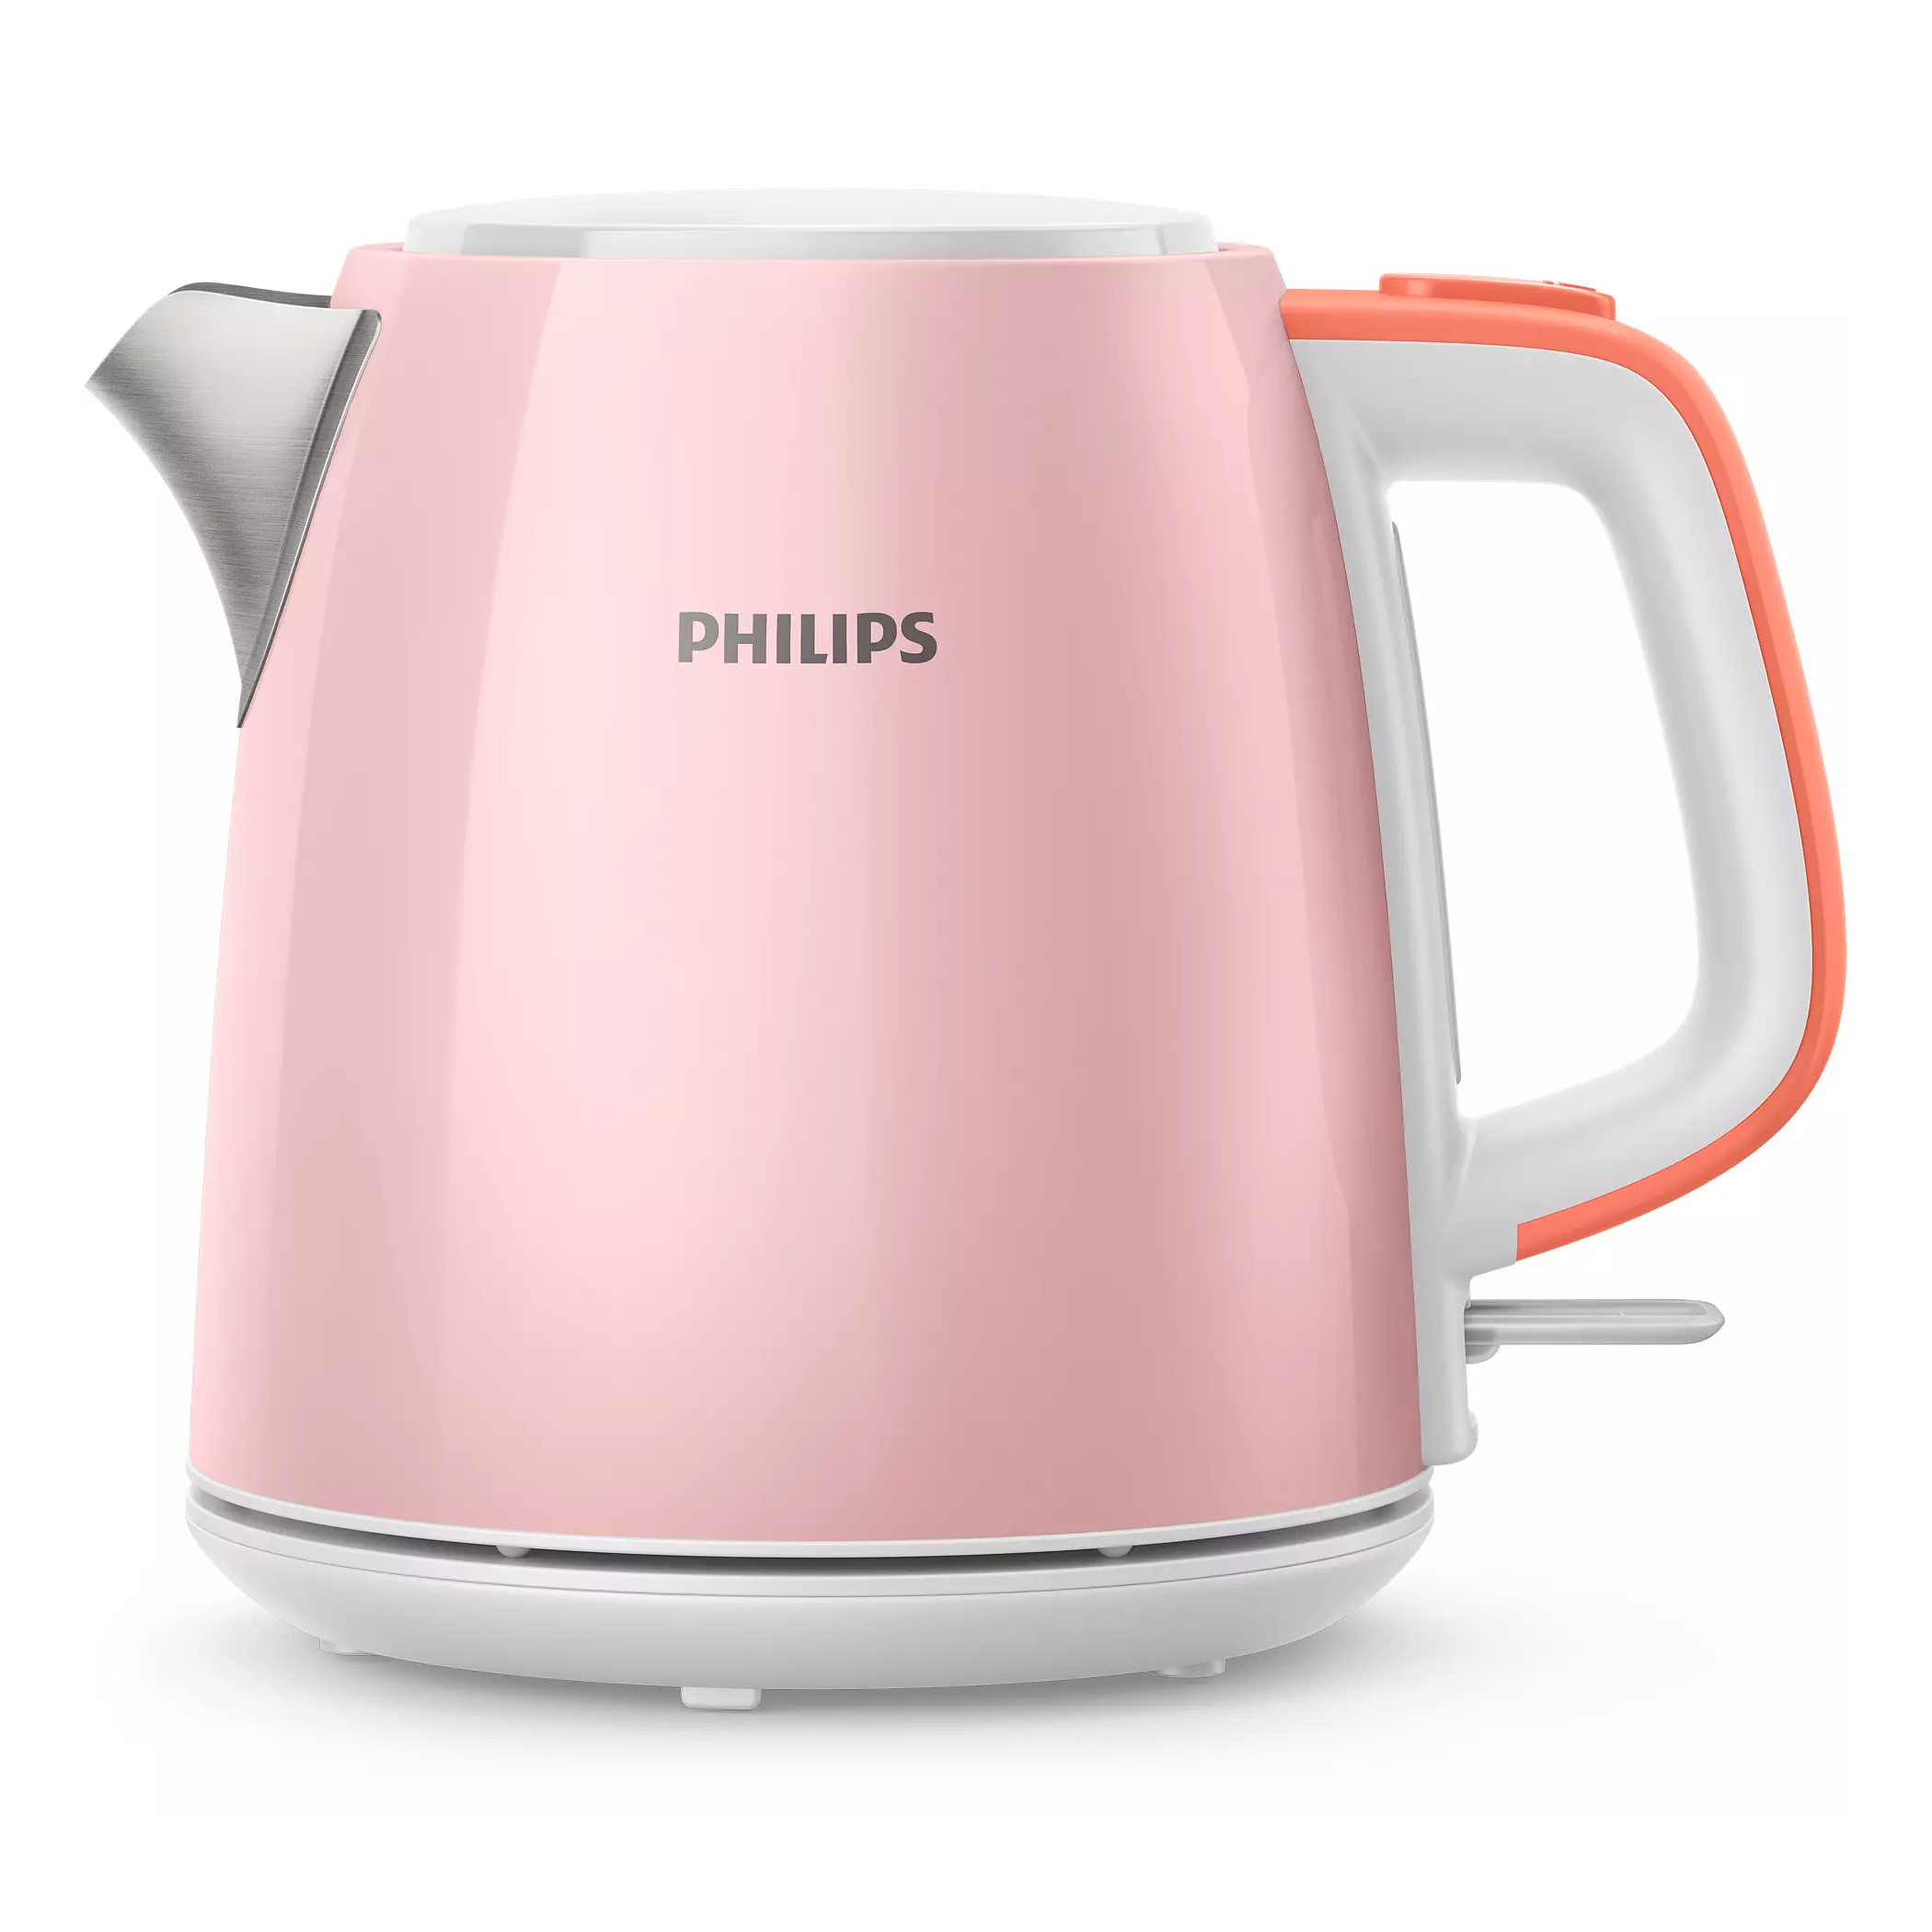 PHILIPS 1L不鏽鋼電熱水壺 HD9348/58 粉紅色